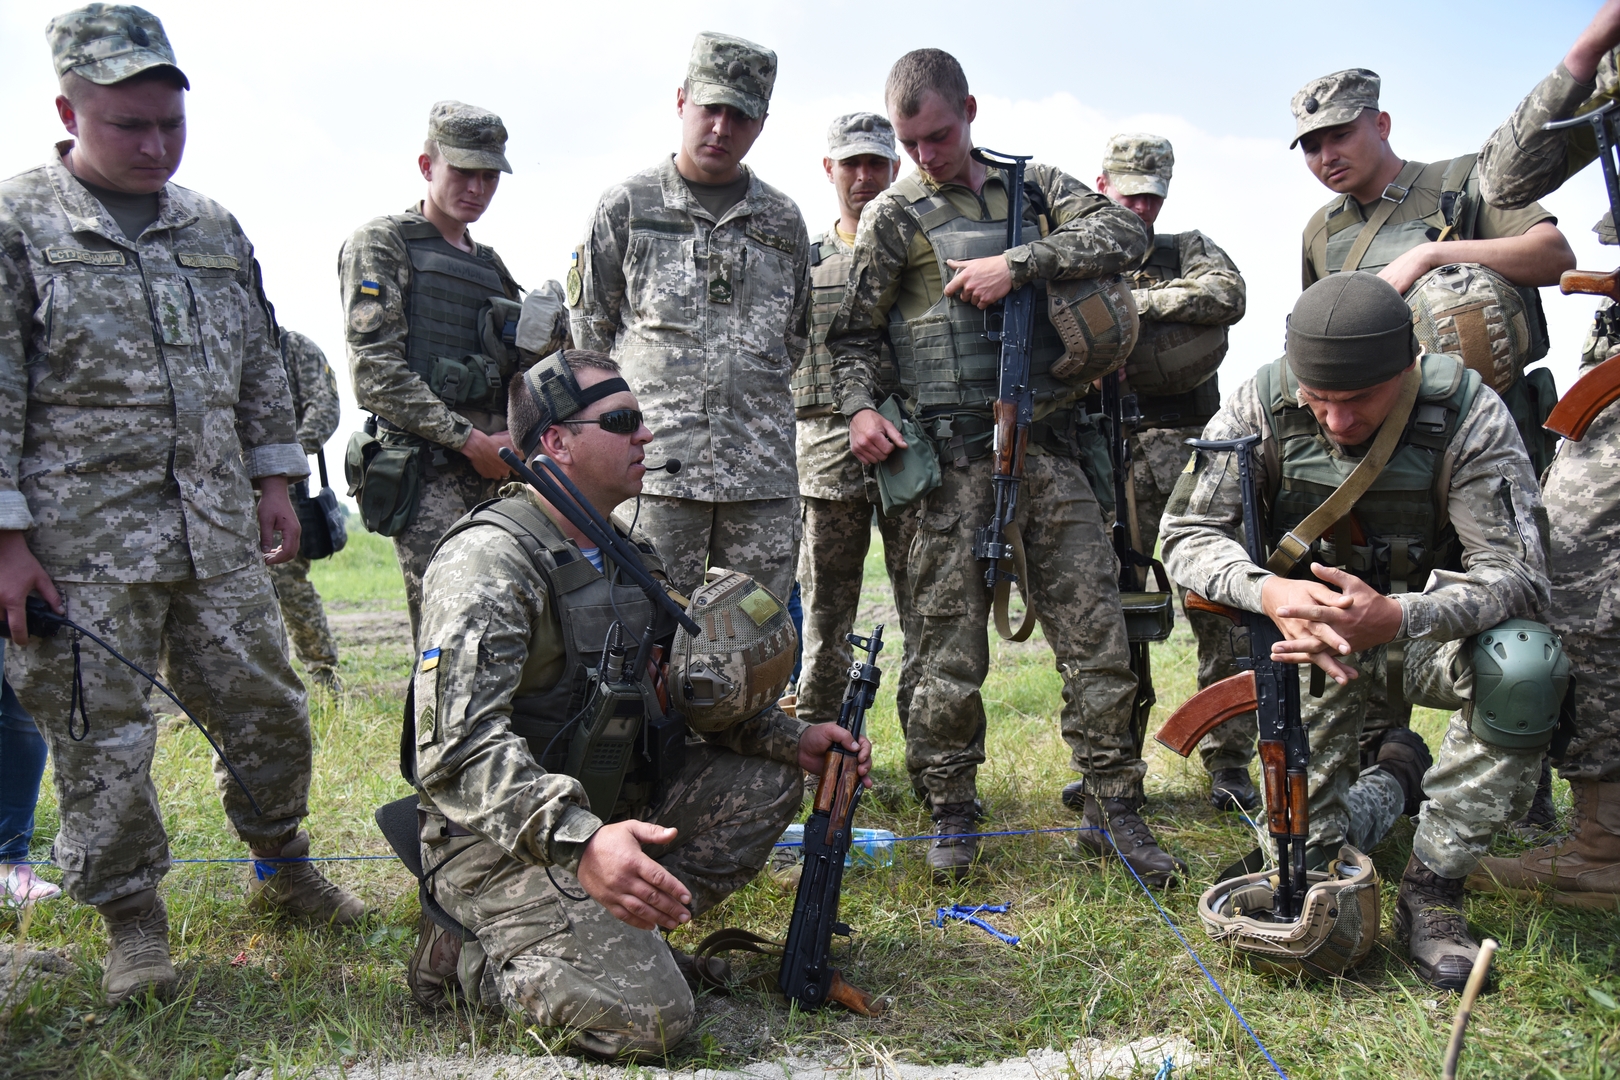 جنود أوكرانيون يفضحون ممارسات جيشهم ويدعون زملاءهم إلى إلقاء السلاح (فيديو)